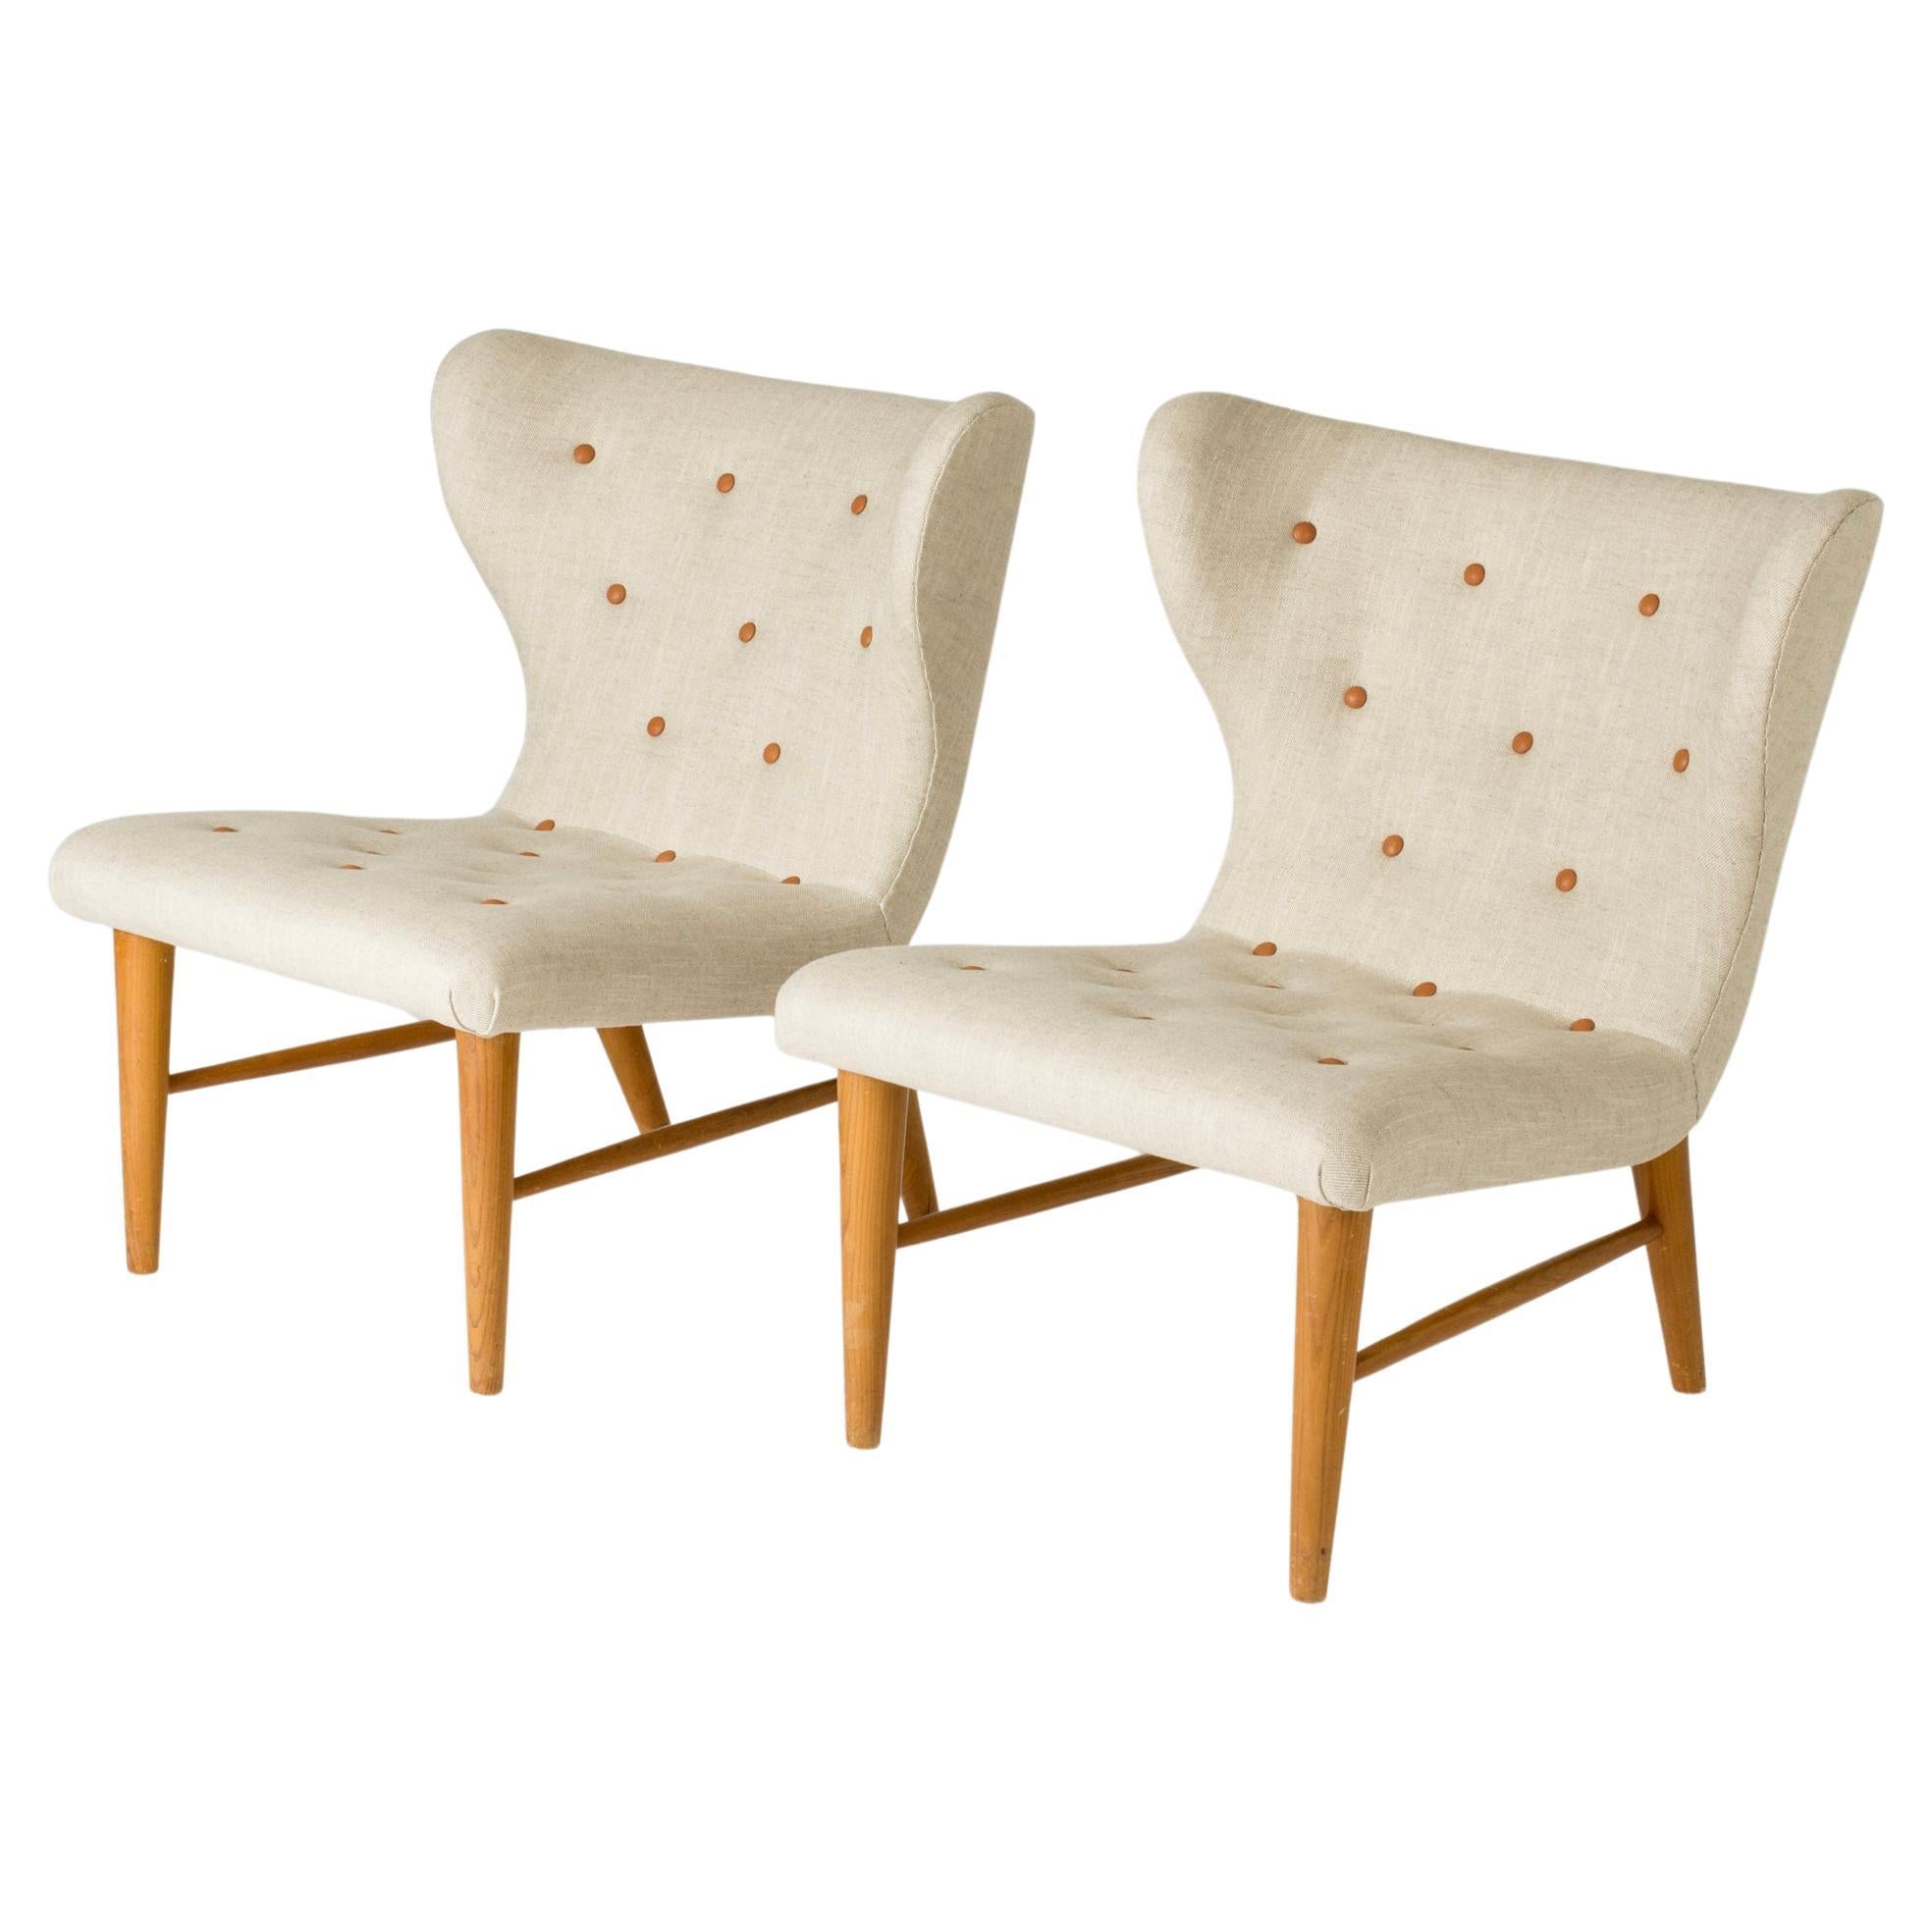 Vintage Modernist Lounge Chairs by Erik Karlén, Sweden, 1940s For Sale